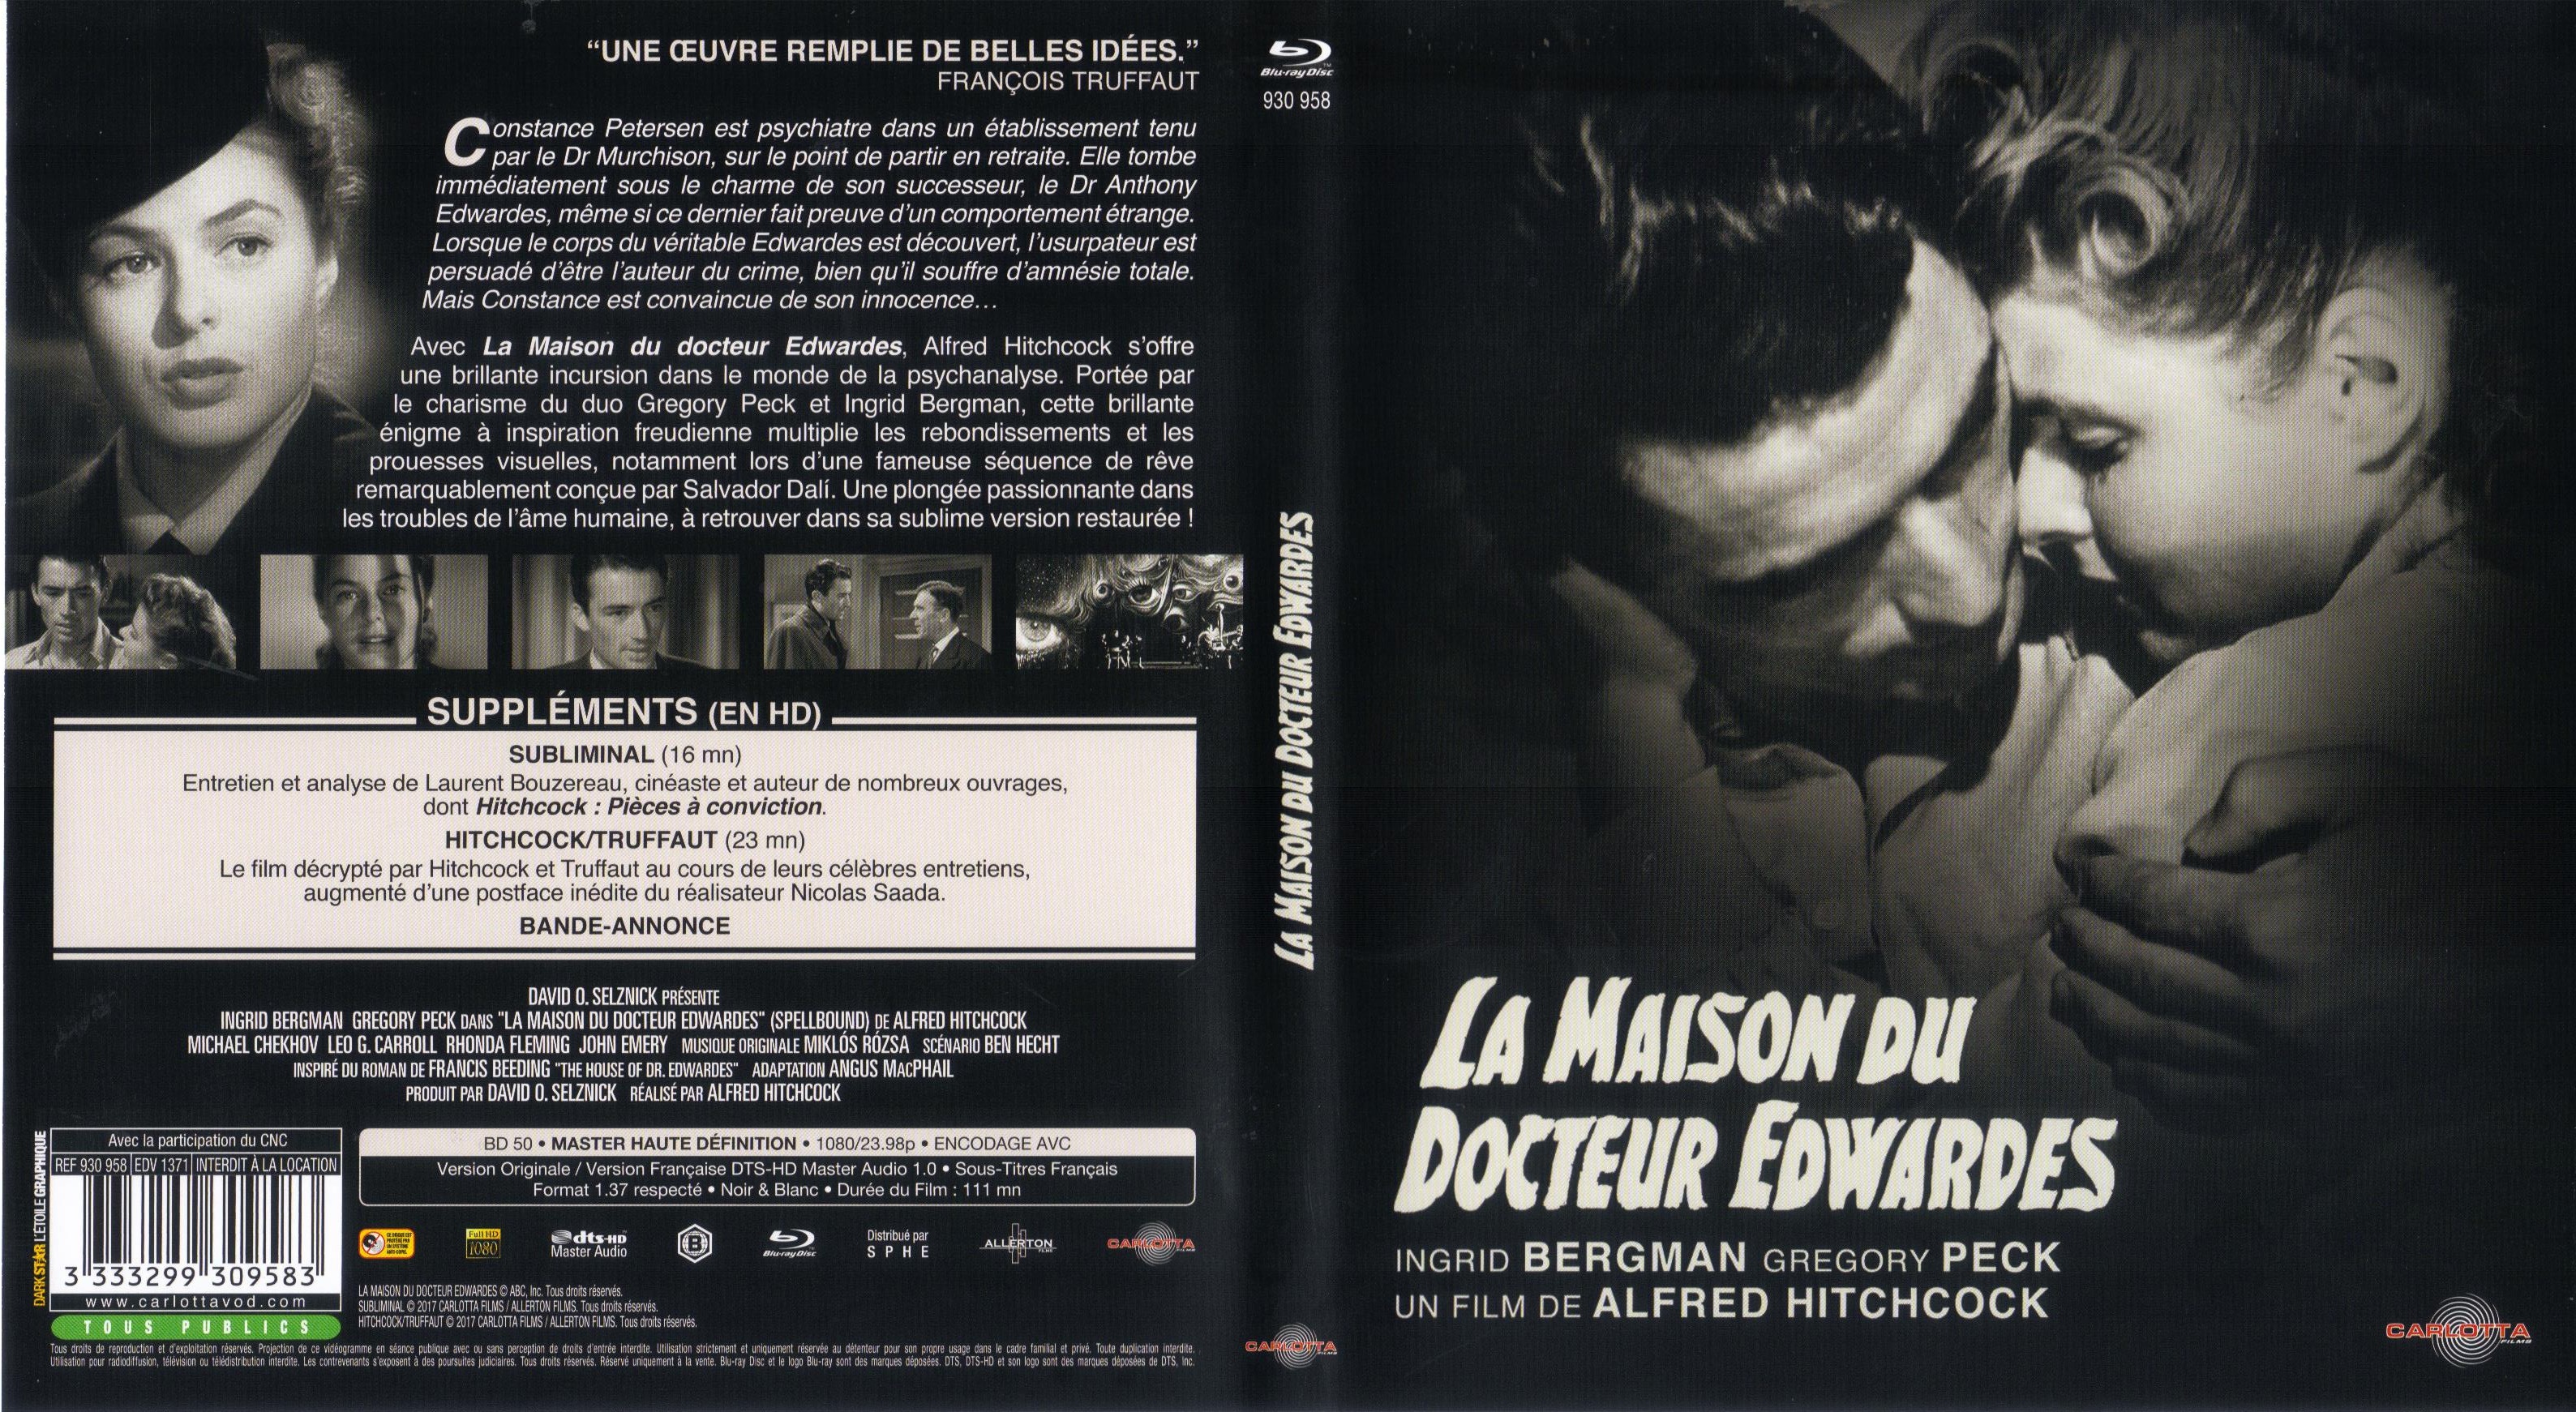 Jaquette DVD La maison du docteur Edwardes (BLU-RAY)